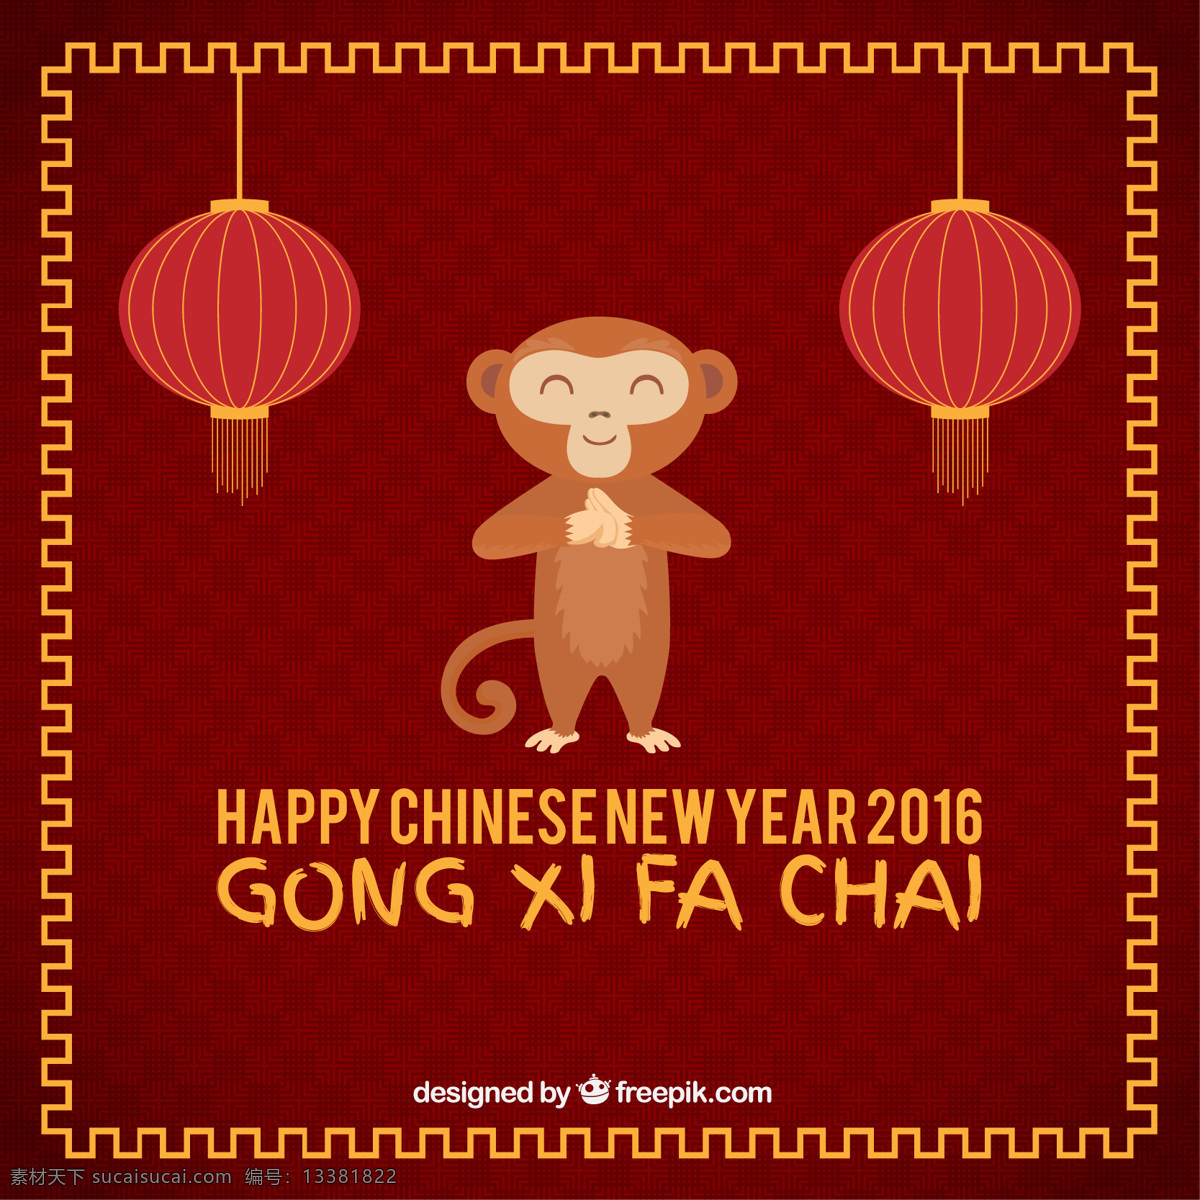 新 年 有趣 猴子 背景 聚会 新年快乐 新的一年 动物 冬天 中国的新年 快乐 可爱 中国 庆祝 事件 节日 2016 节日快乐 红色